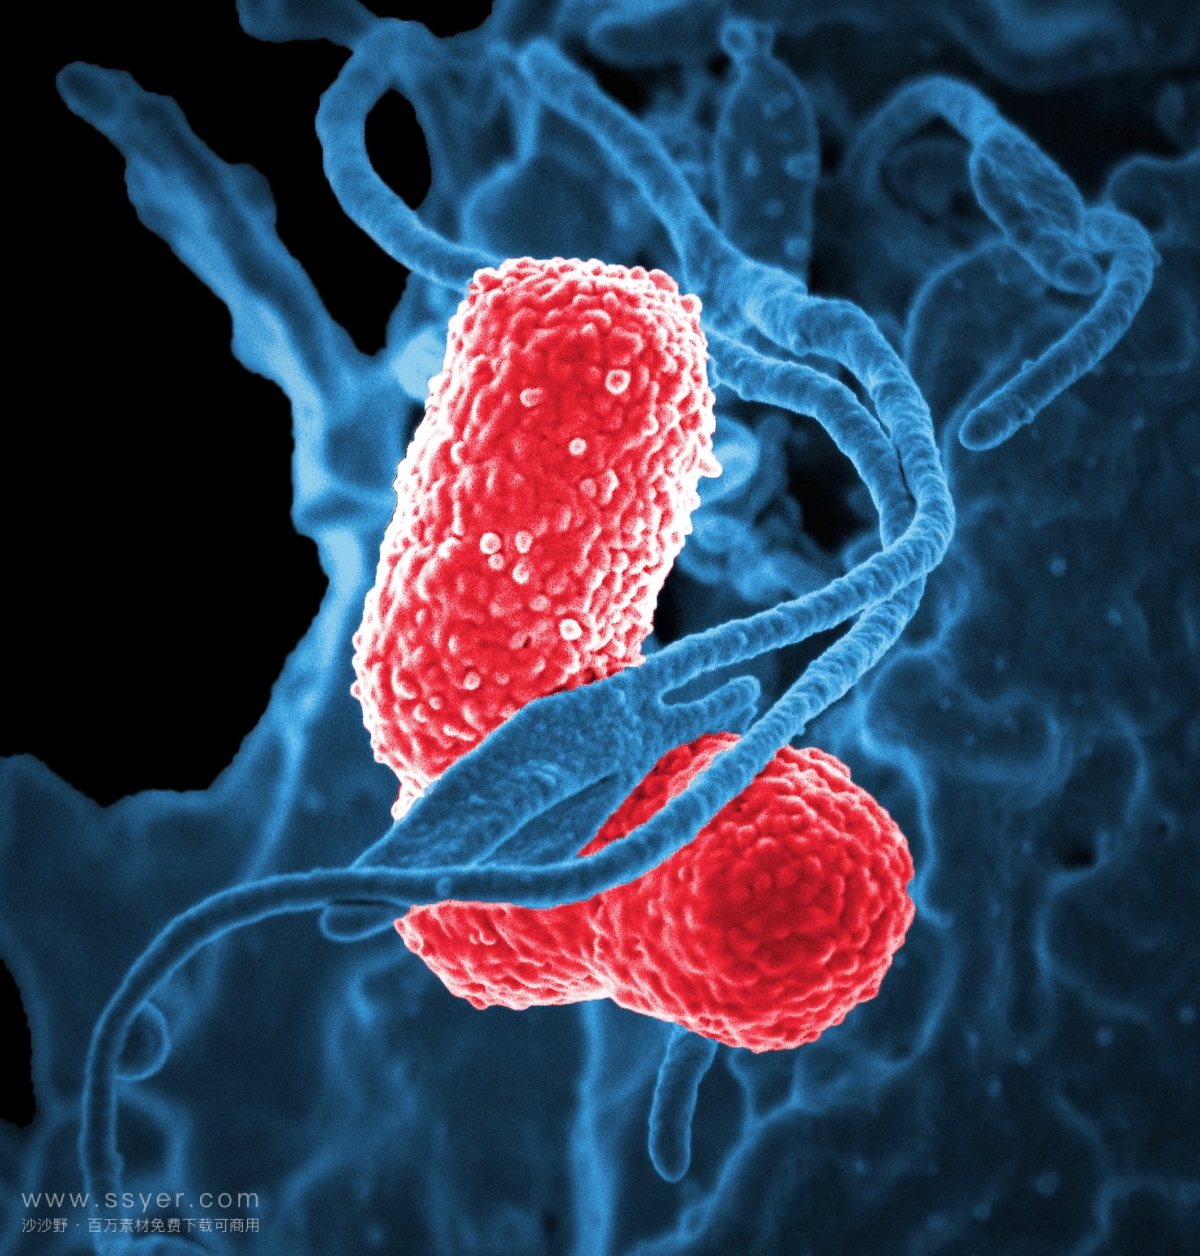 科学家发明了超级抗虫、自我清洁的保鲜膜